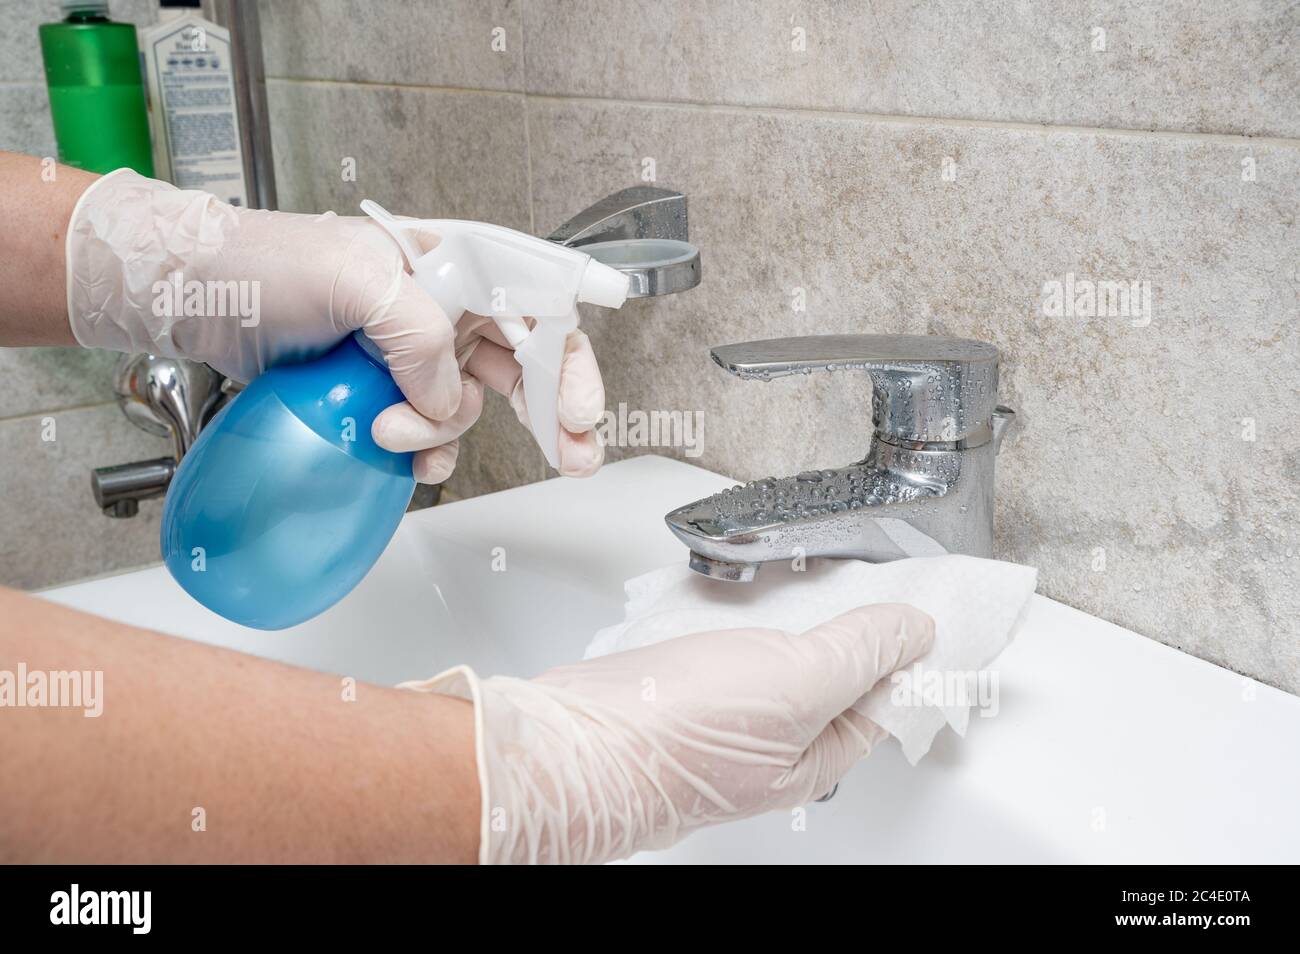 Désinfection de la salle de bains. Nettoyage et désinfection des robinets. Prévention de l'infection à coronavirus. Banque D'Images